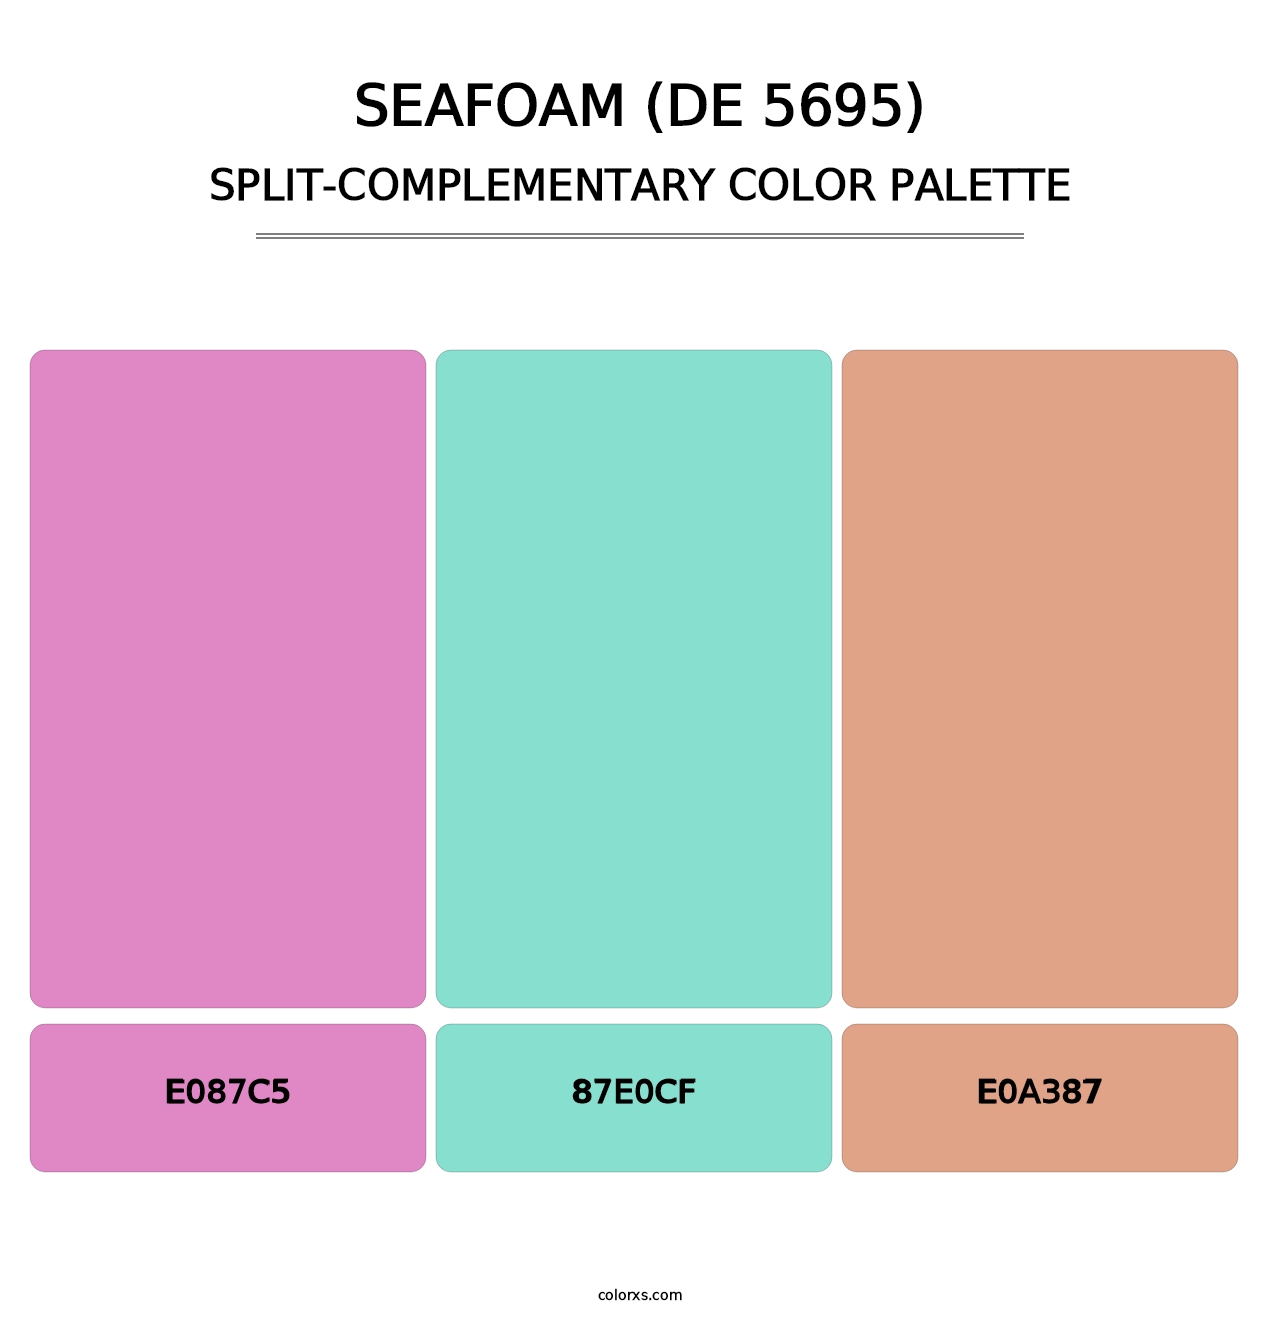 Seafoam (DE 5695) - Split-Complementary Color Palette